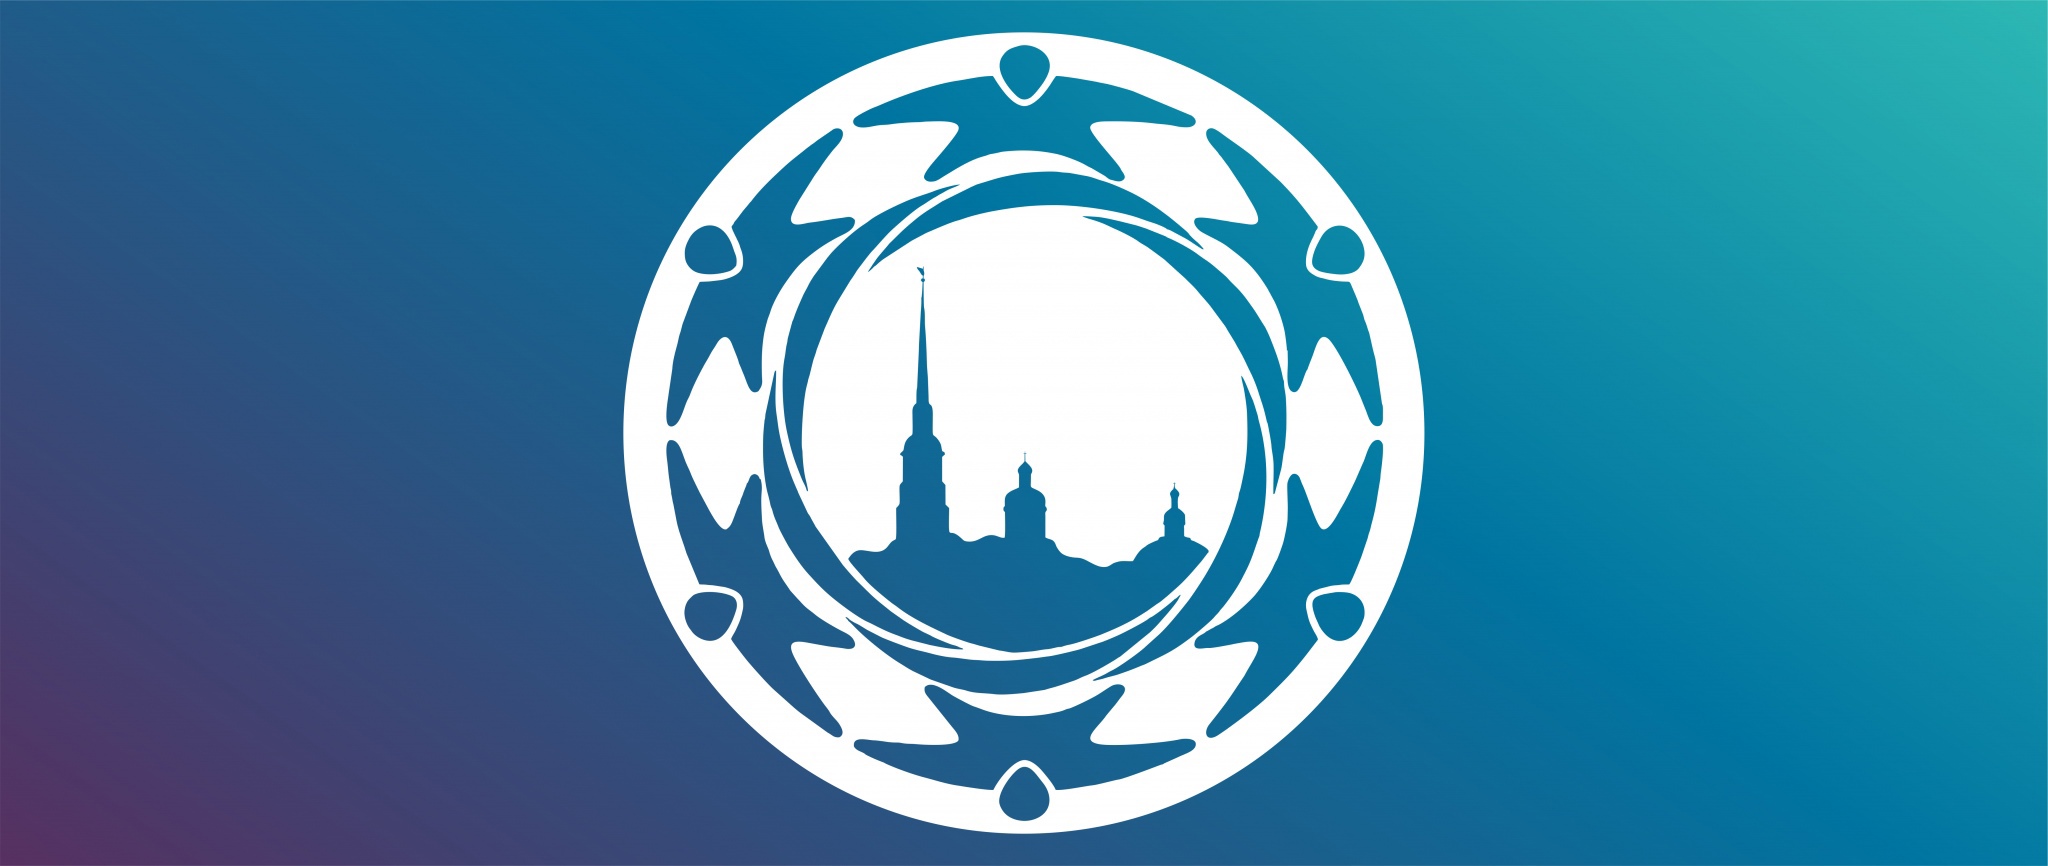 Конкурс студенческих исследовательских работ по проблематике формирования толерантной среды в Санкт-Петербурге